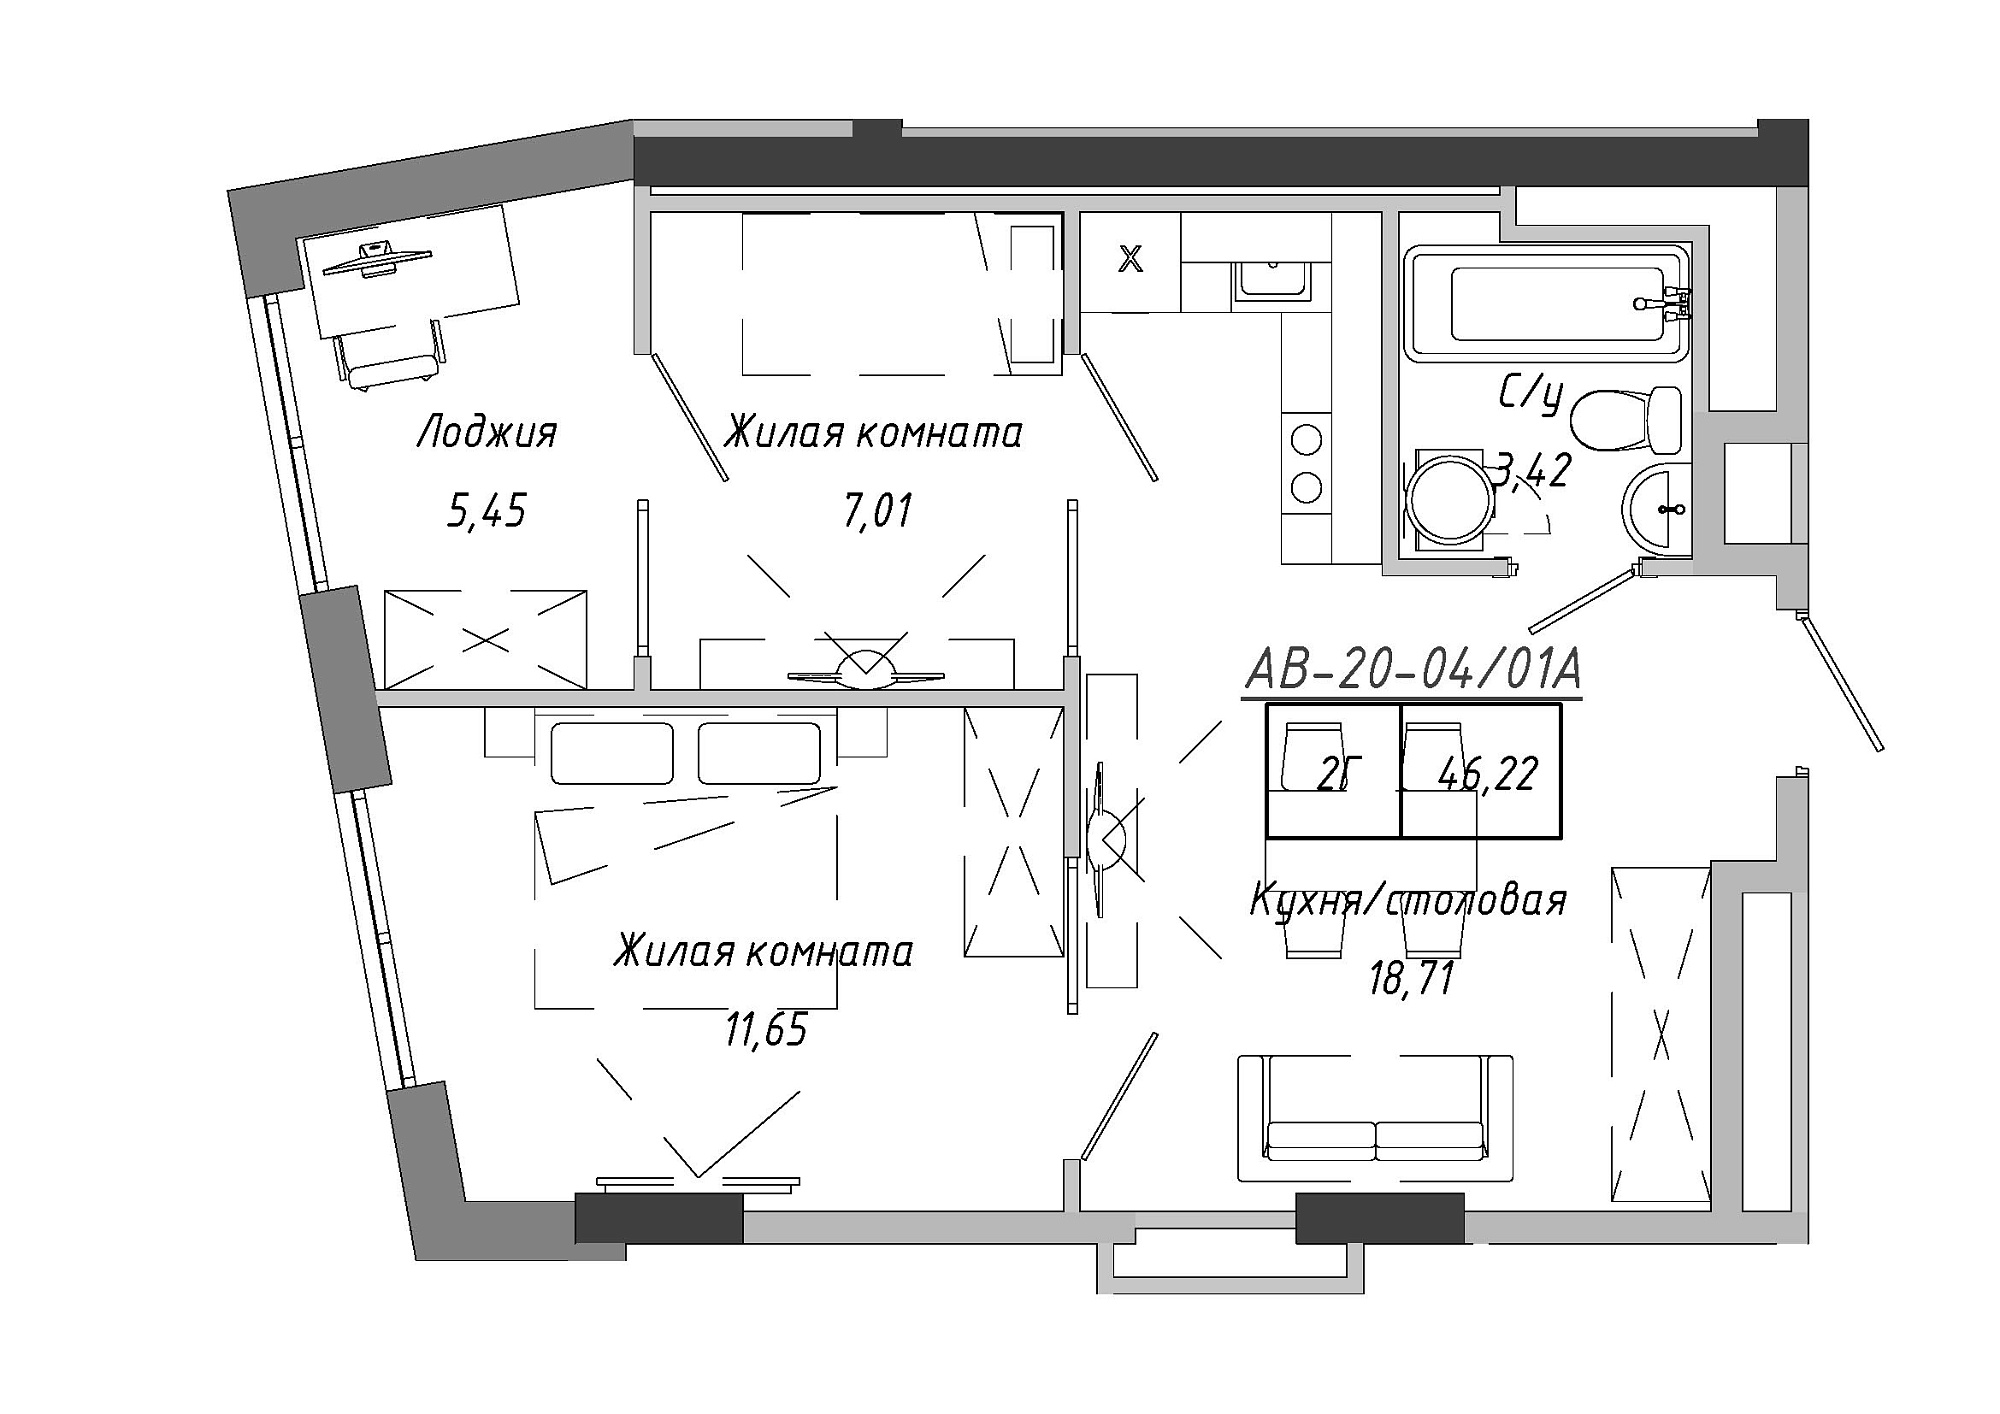 Планування 2-к квартира площею 46.22м2, AB-20-04/0001а.